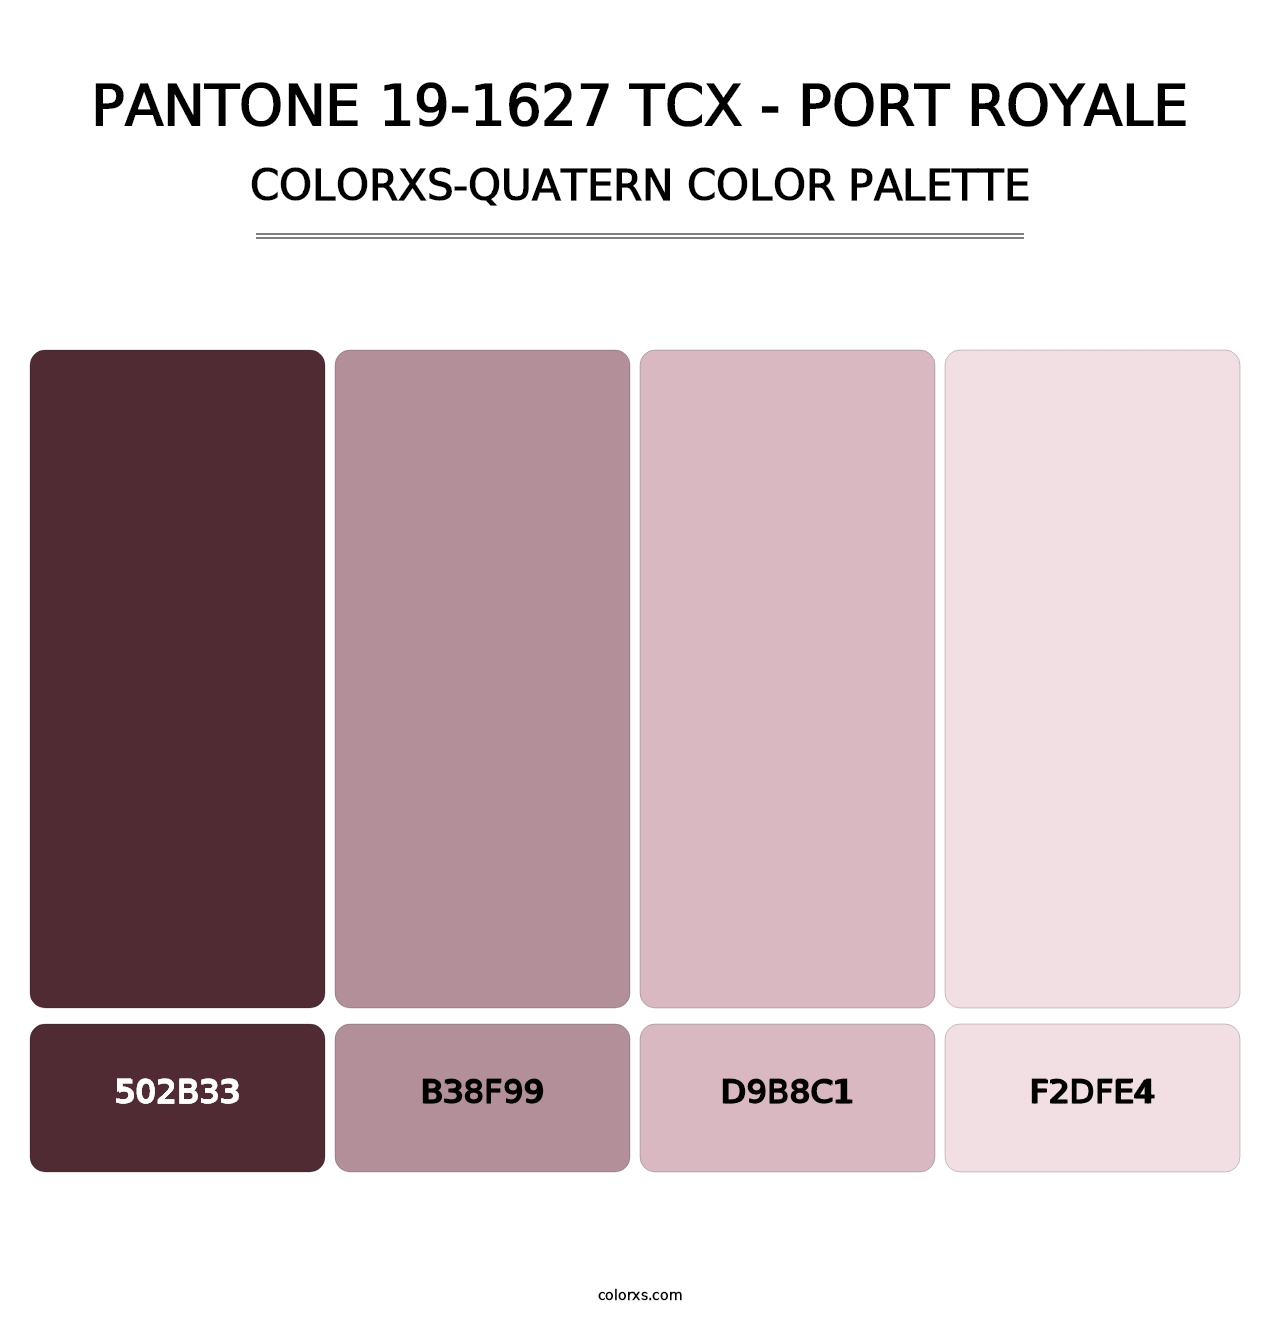 PANTONE 19-1627 TCX - Port Royale - Colorxs Quatern Palette